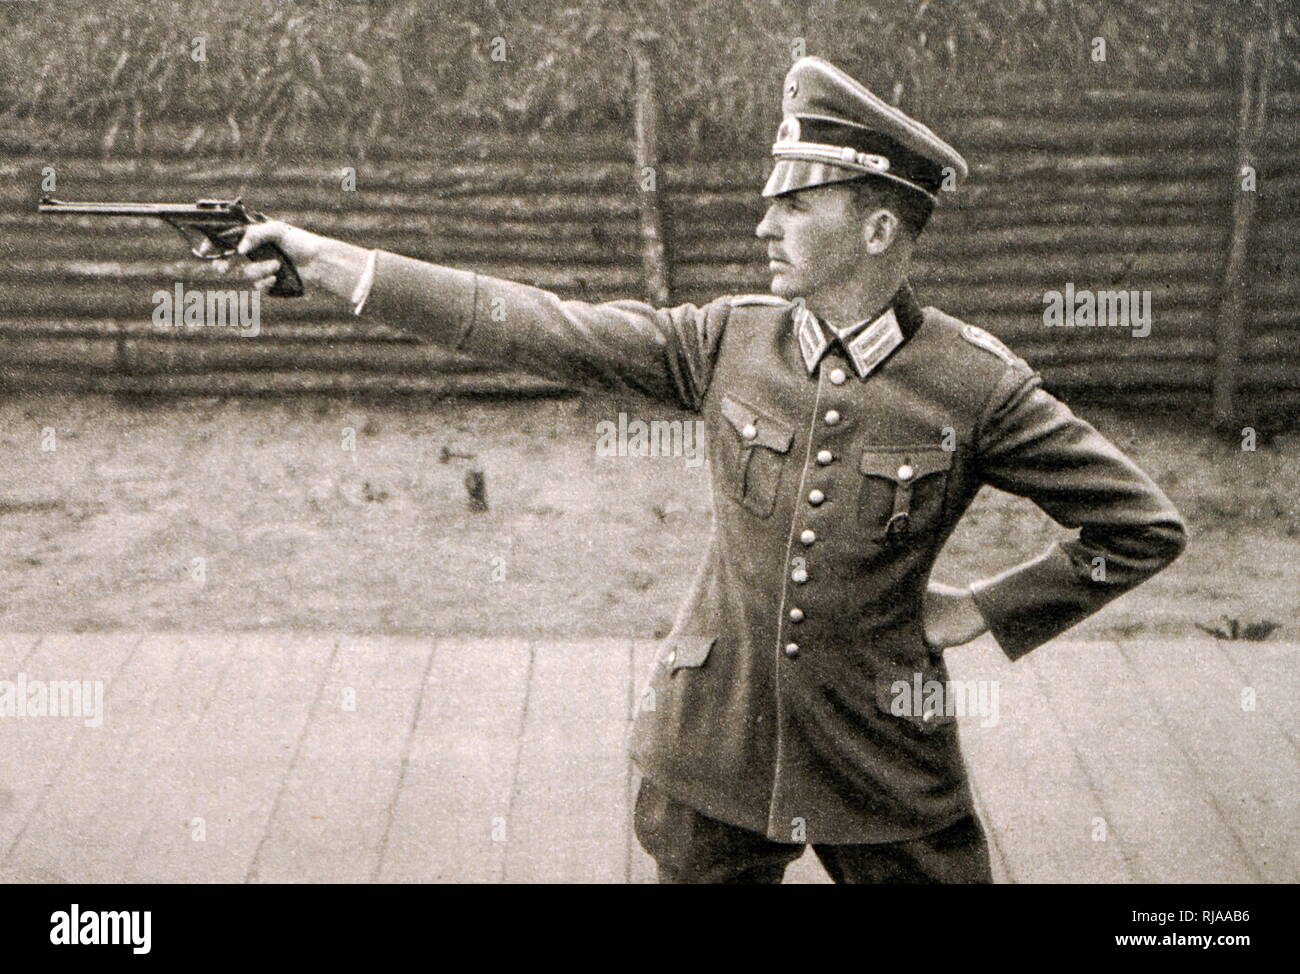 Foto von Heinrich Hax (1900 - 1969) im Jahr 1932 Olympische Spiele. Hax war ein pantathlete und Sport Shooter. Er war das Ritterkreuz des Eisernen Kreuzes mit Eichenlaub des nationalsozialistischen Deutschland. Stockfoto